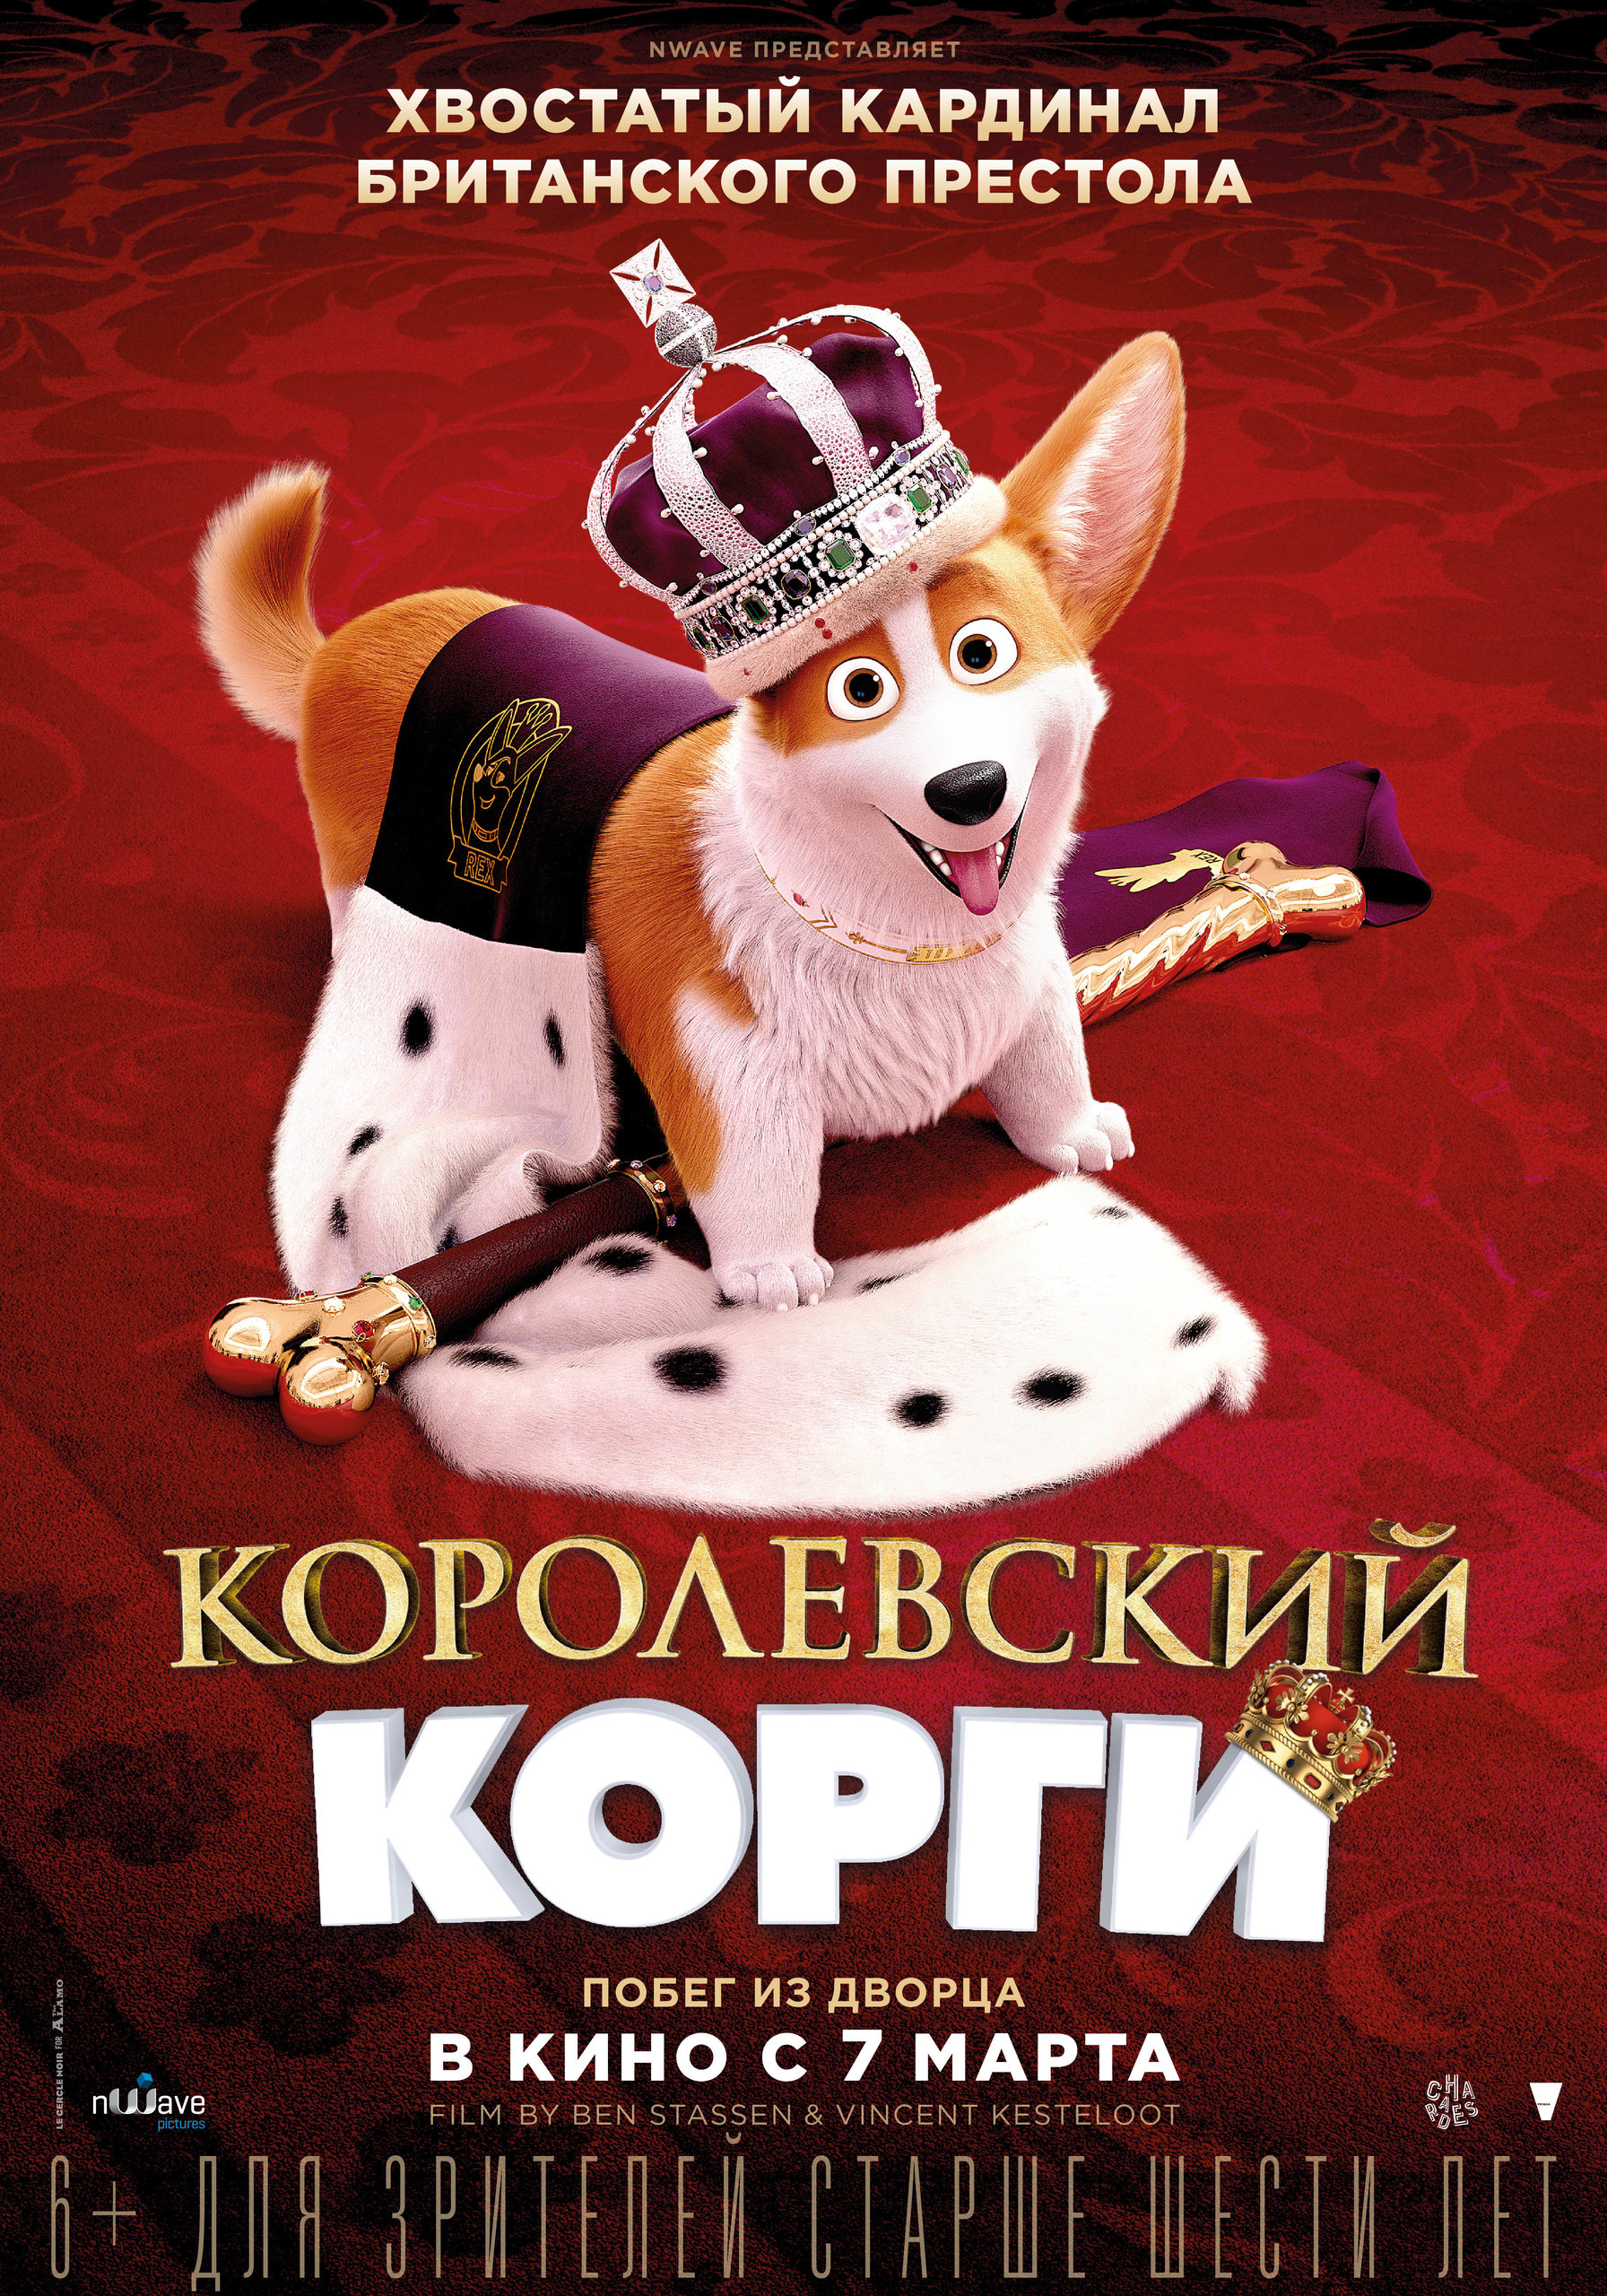 Королевский корги мультфильм 2019 Постер